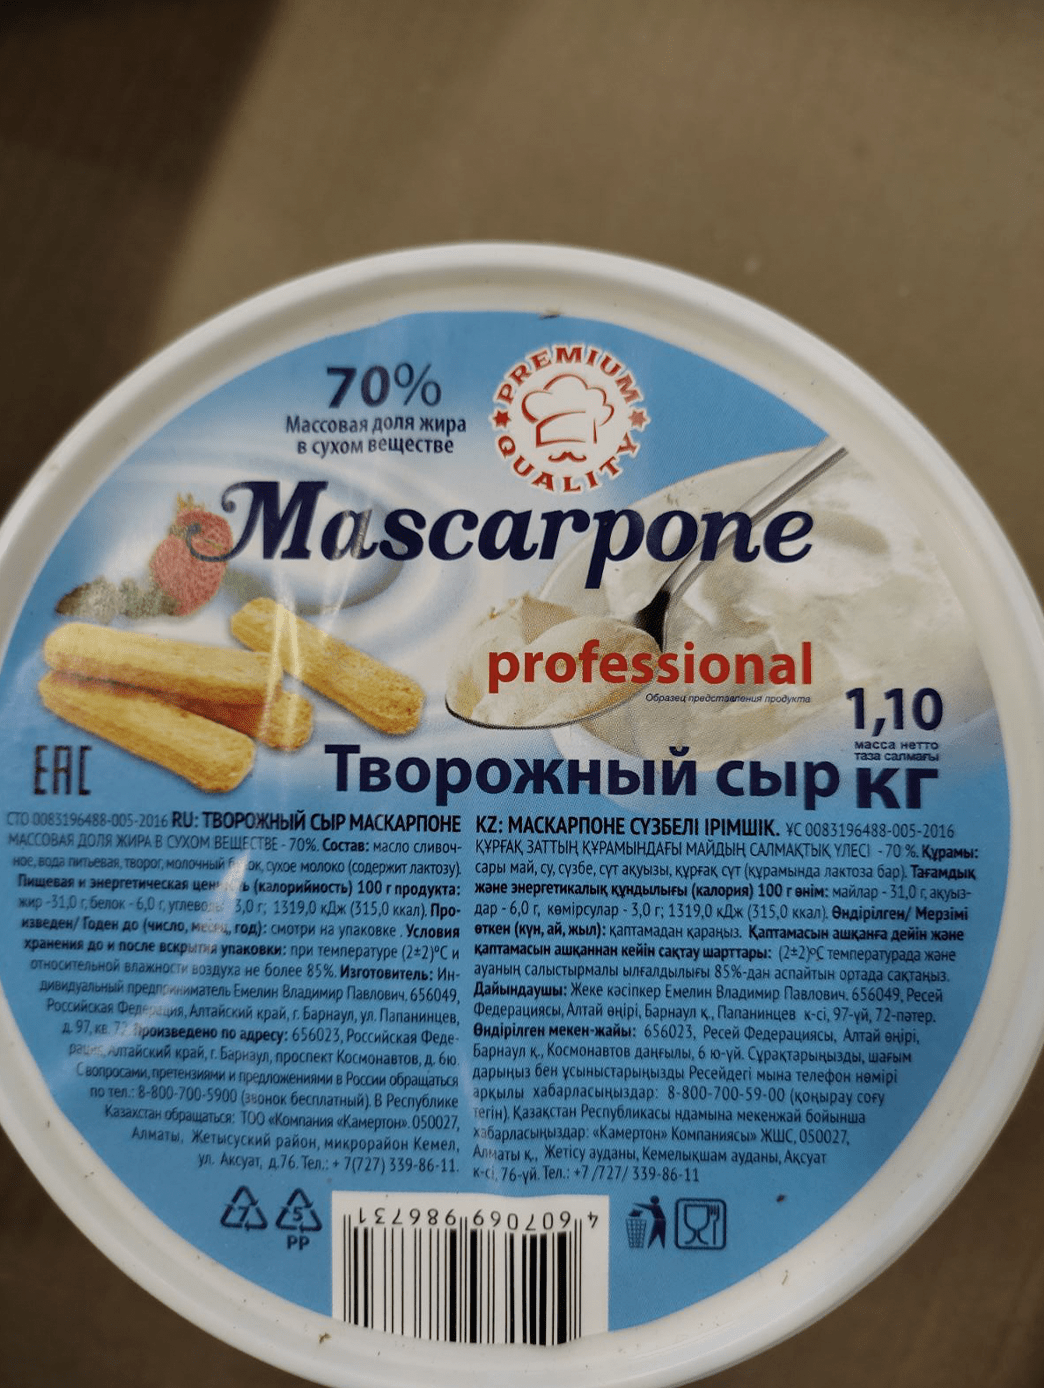 229 Сыр творожный «Mascarpone» профессиональный 70% 1,10 кг